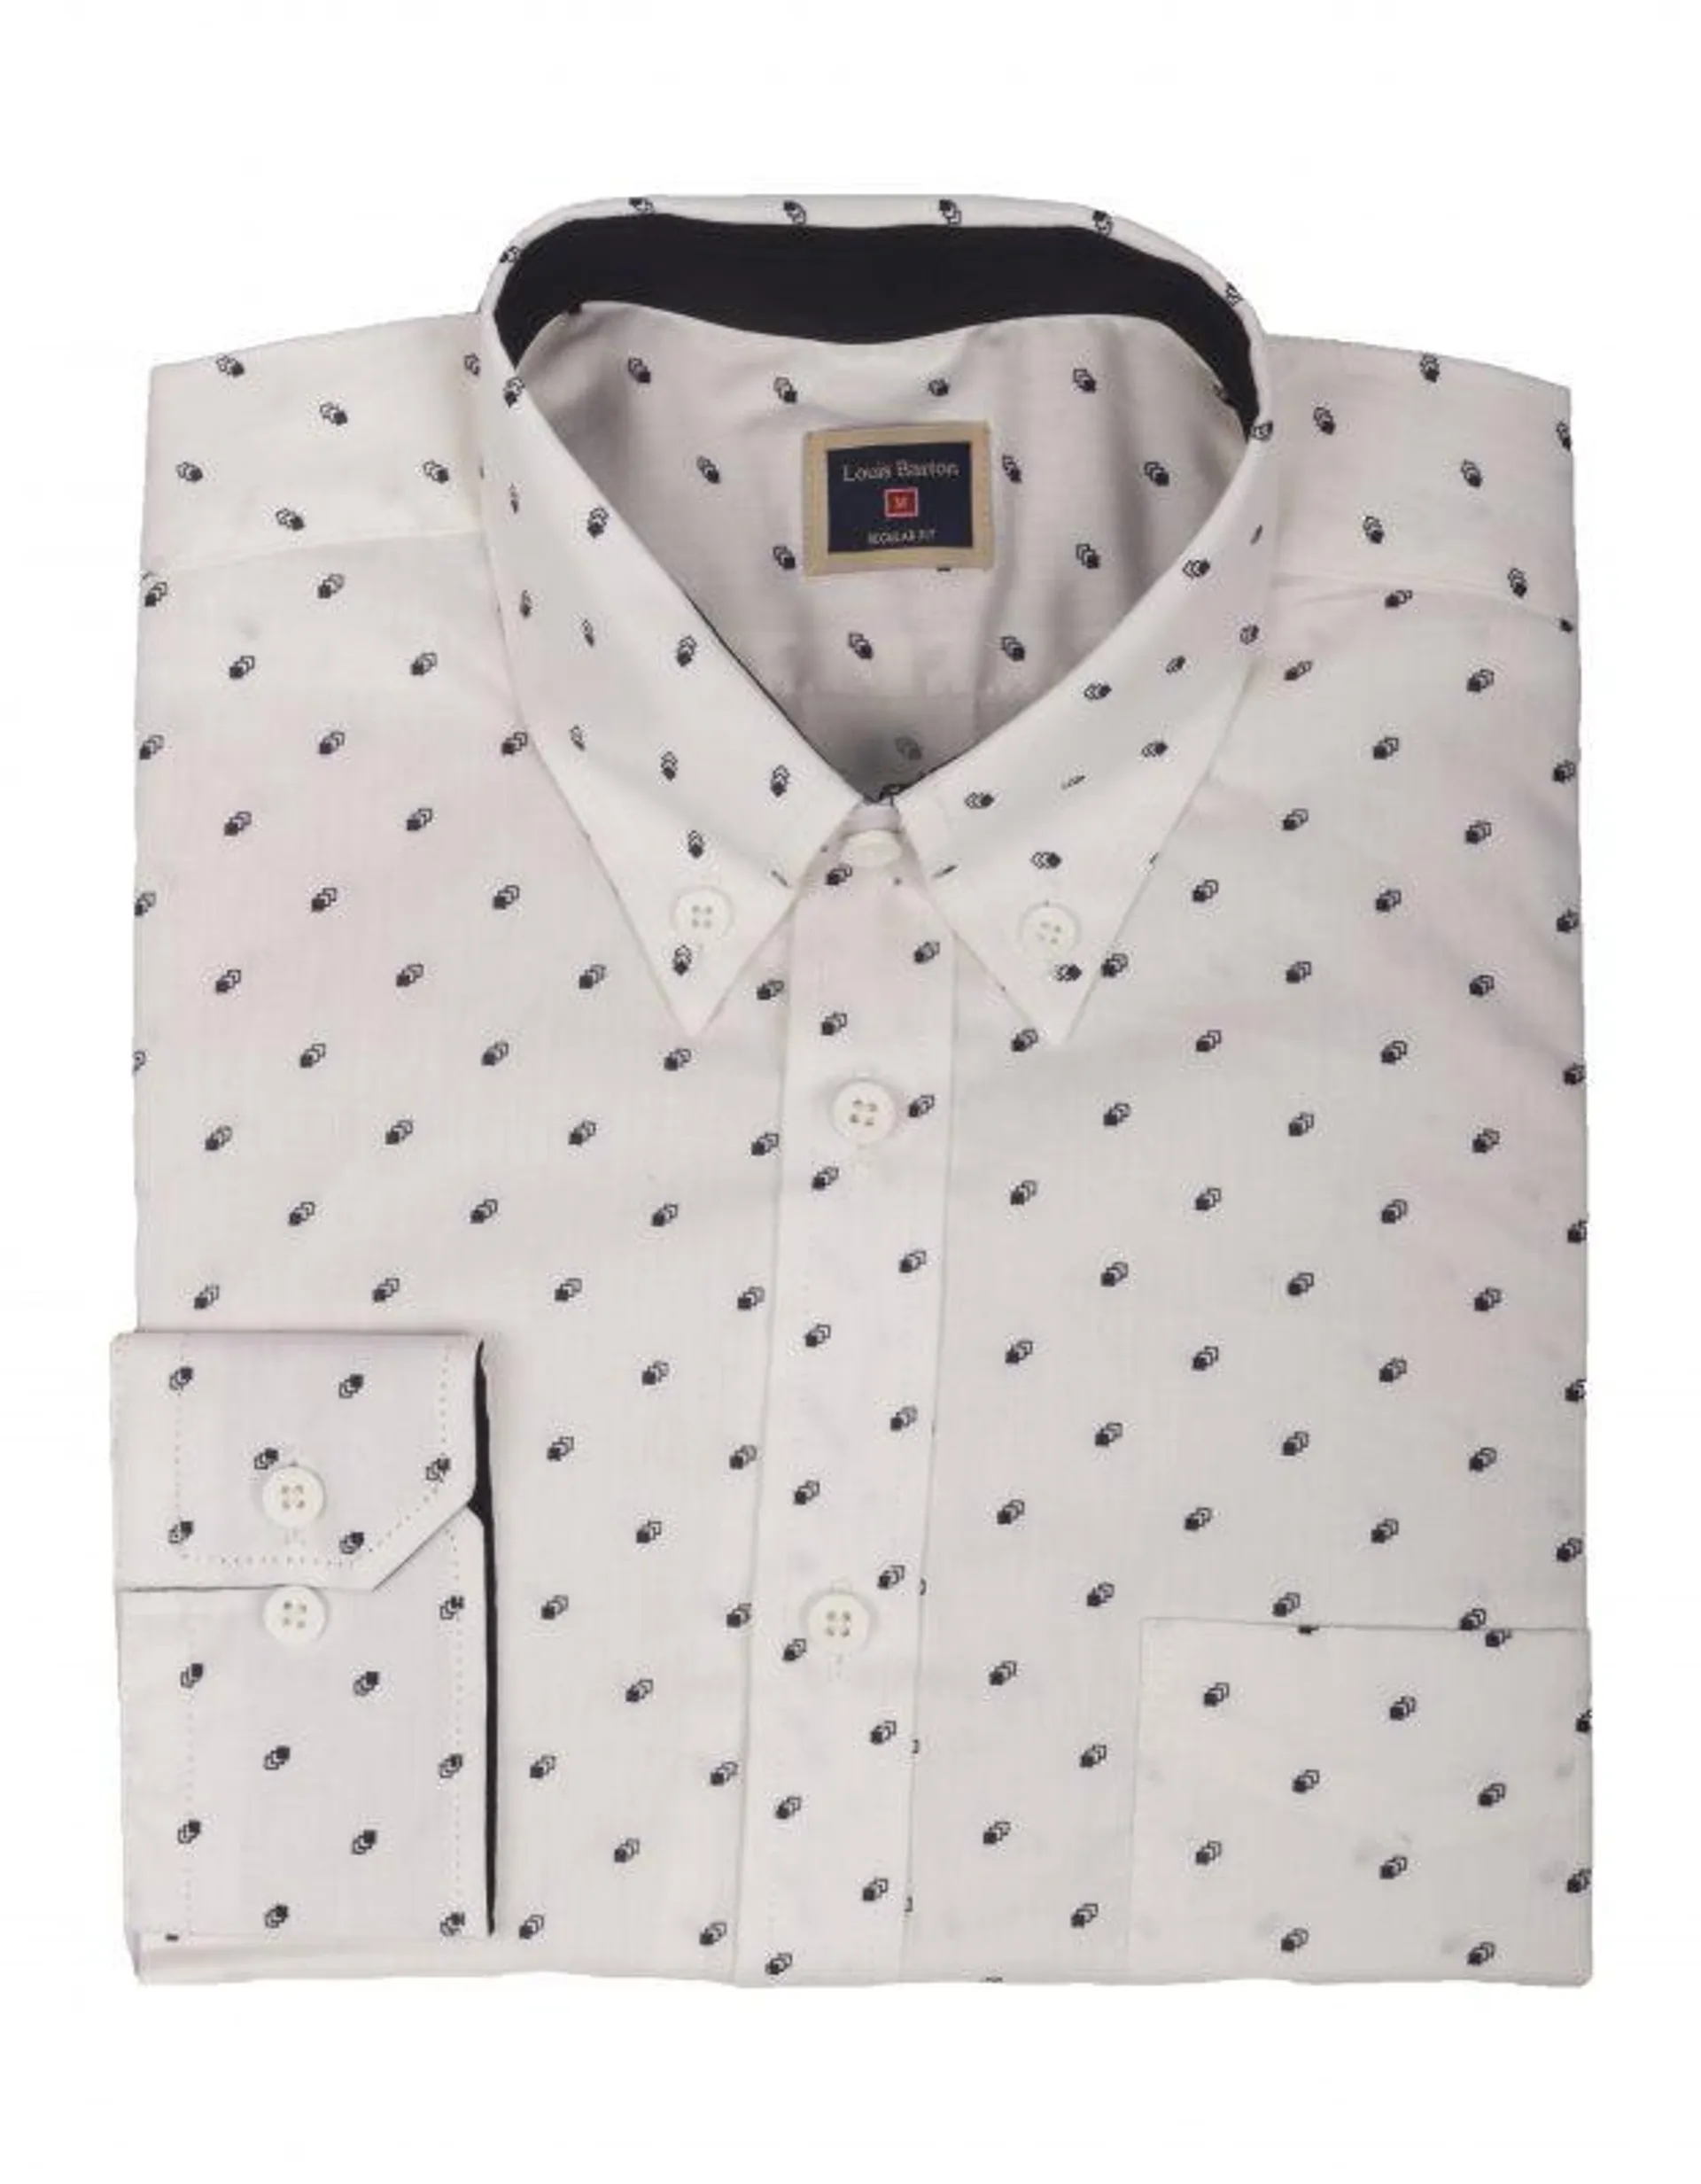 Camisa Manga Corta Blanca Print Triángulos y Puntos – Moldería informal